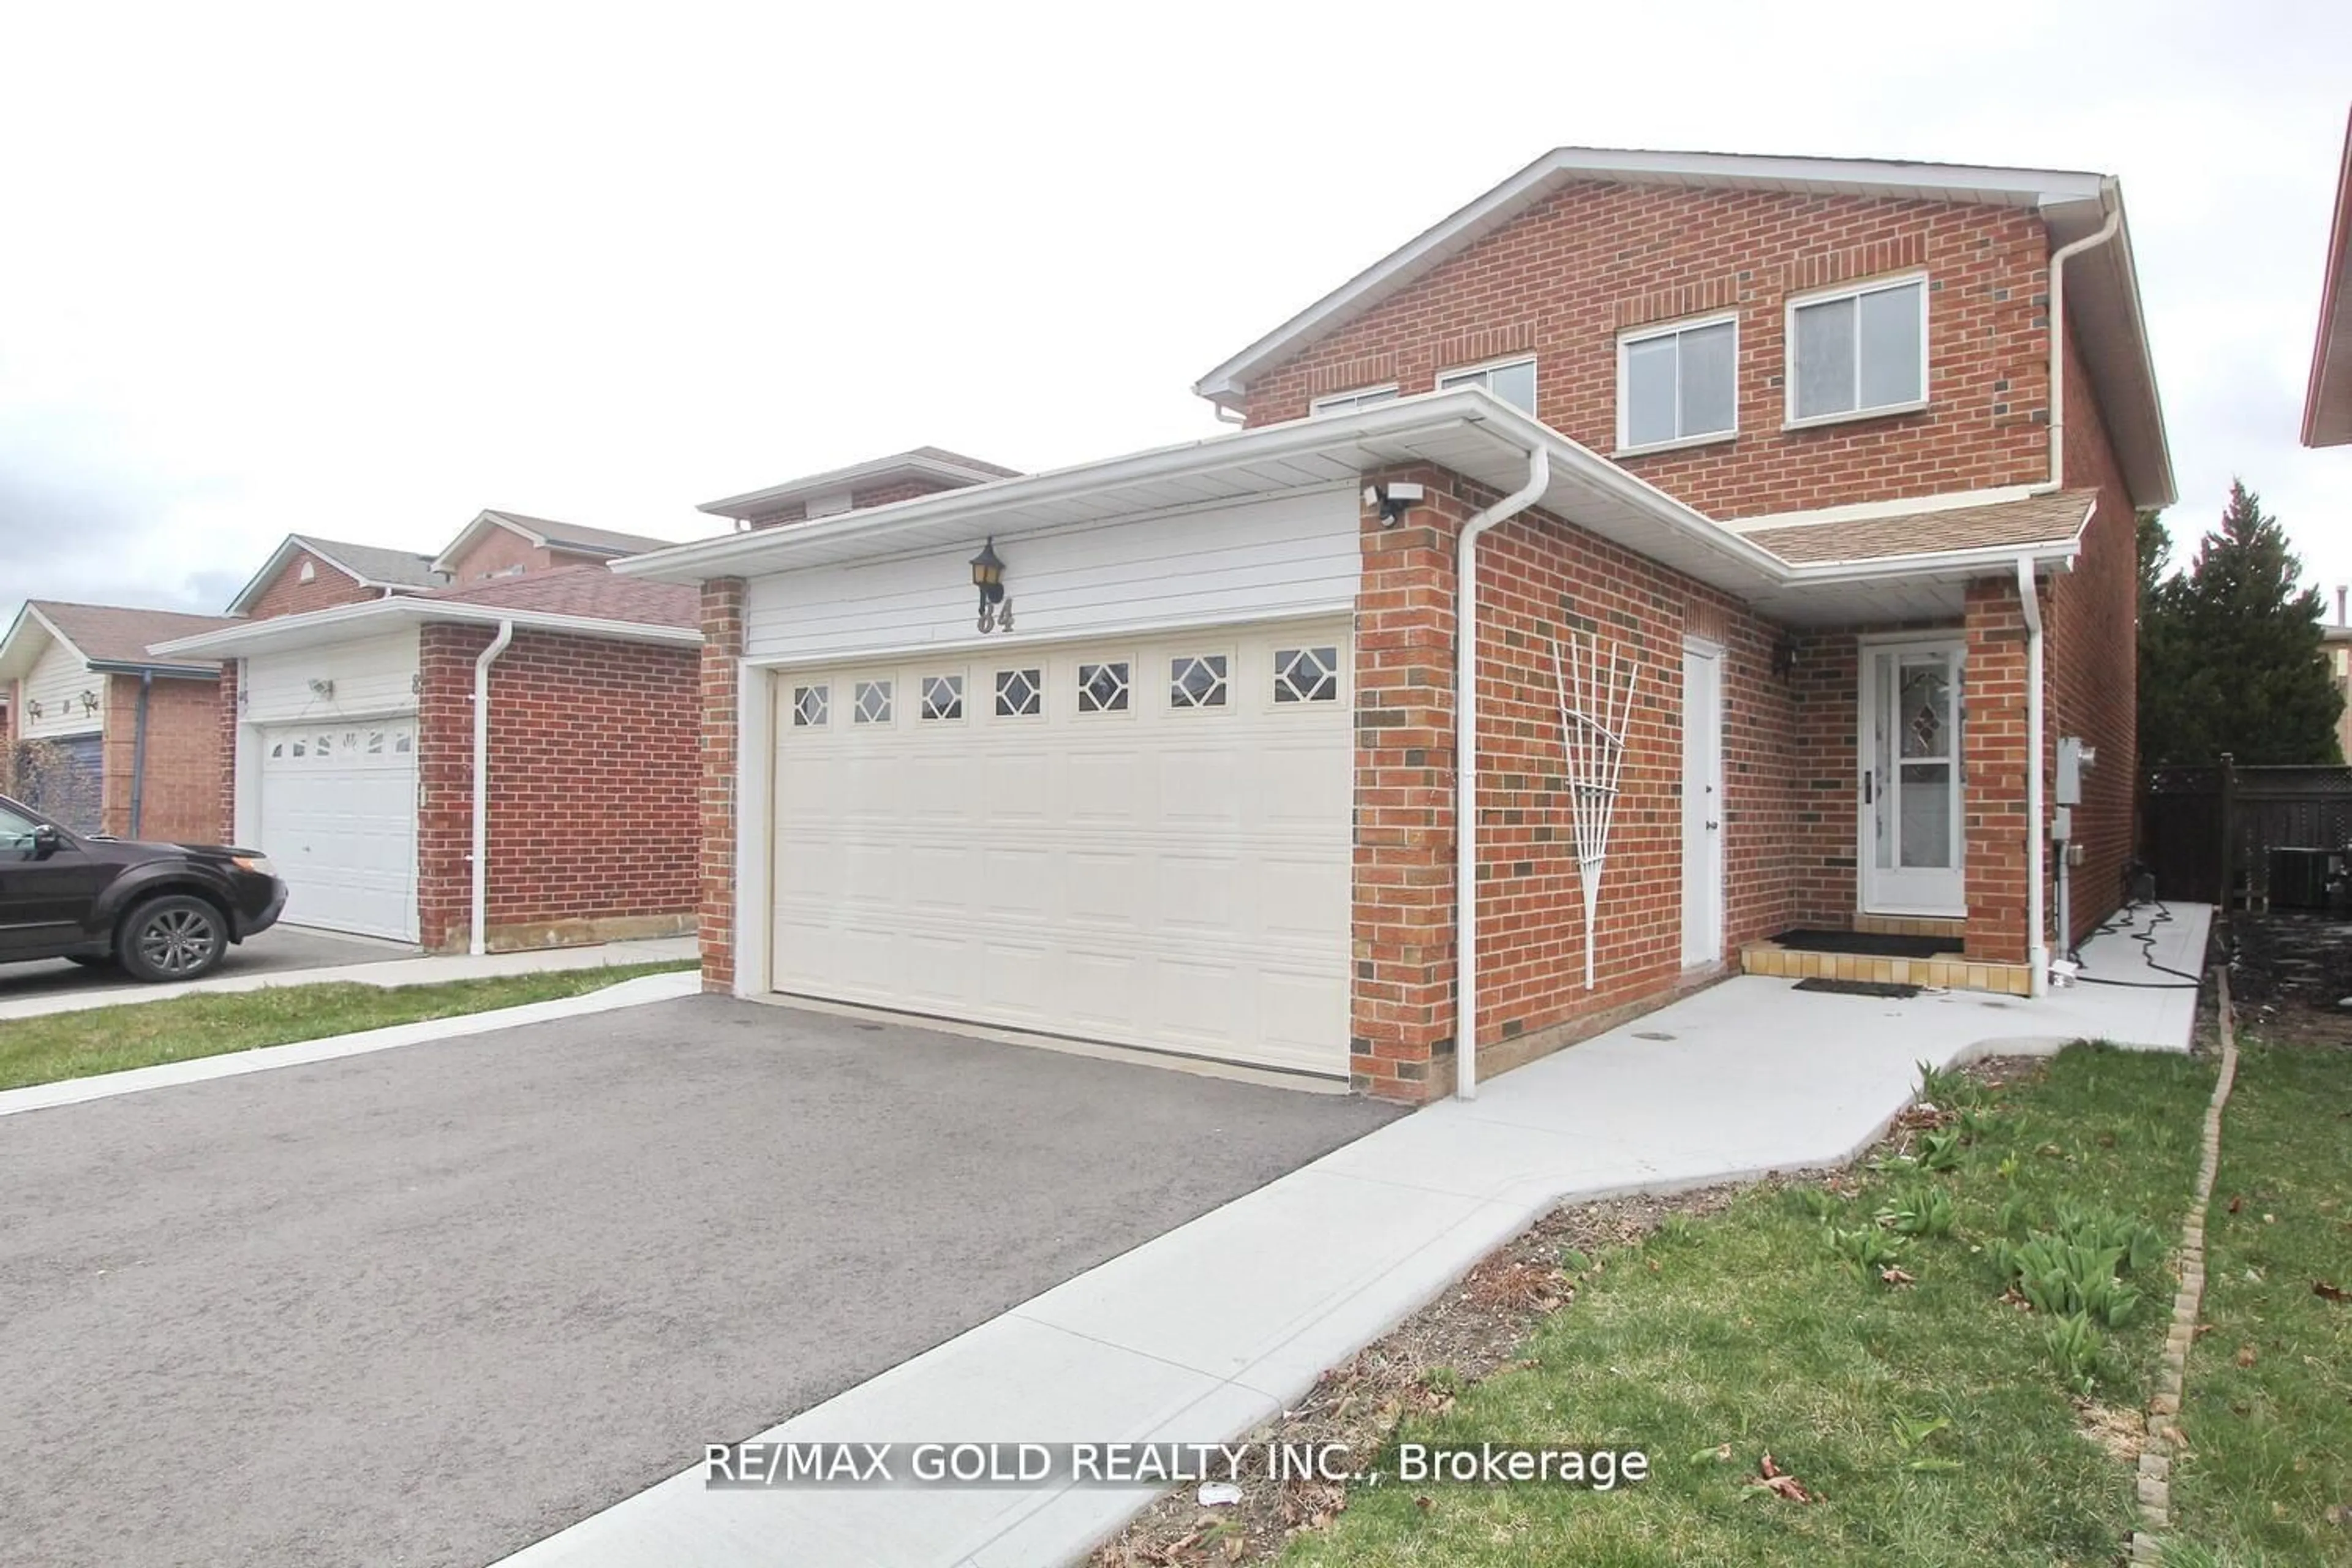 Home with brick exterior material for 84 Metzak Dr, Brampton Ontario L6Z 4N4